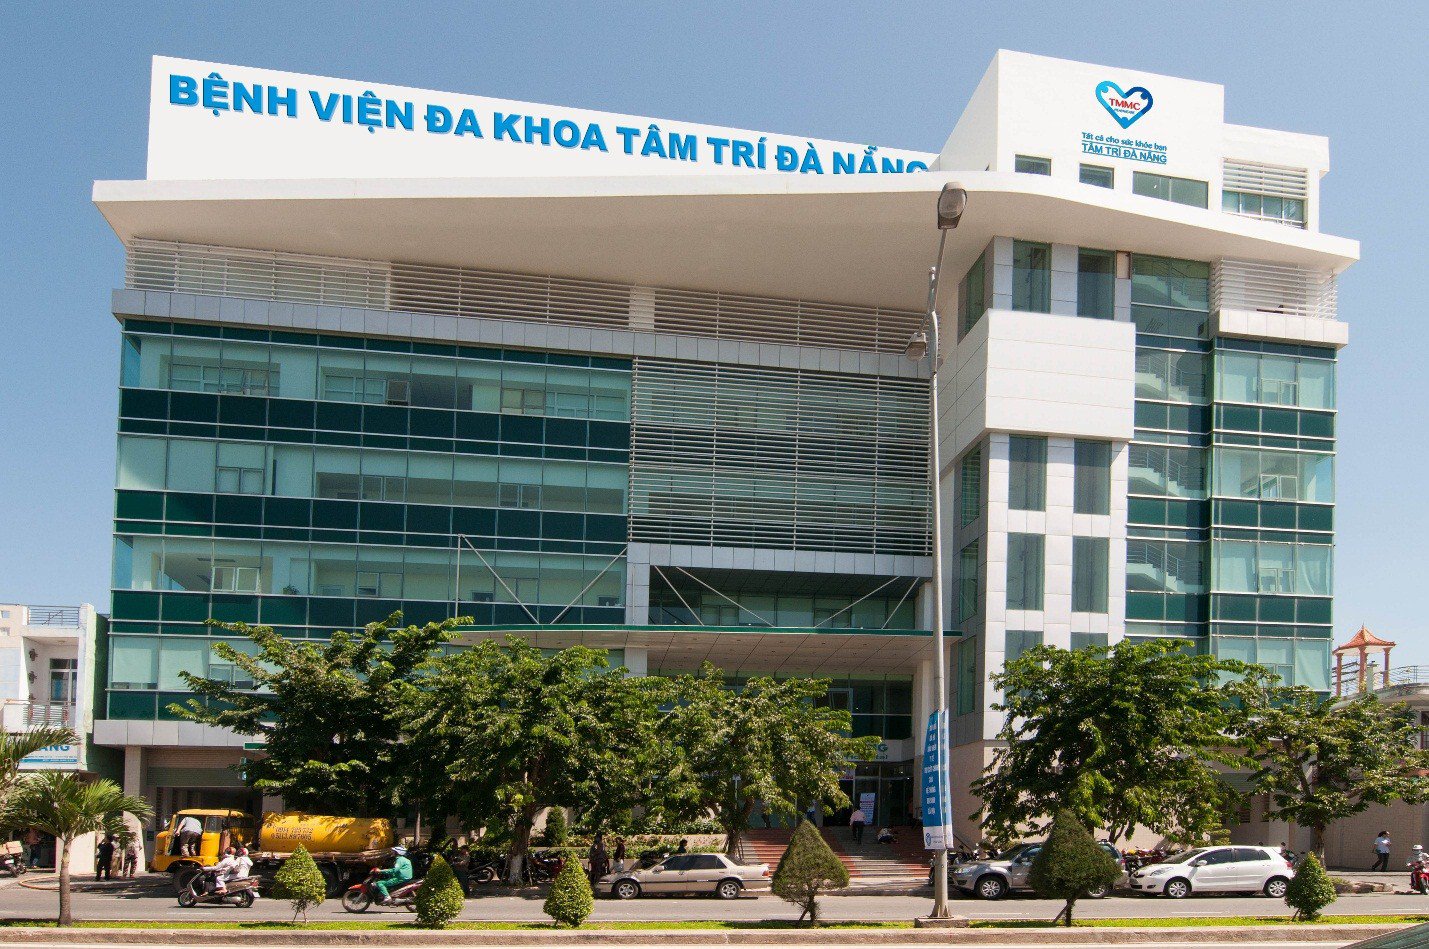 Sử dụng bảo hiểm Bảo Việt bạn cũng sẽ được chi trả khi khám tại bệnh viện đa khoa Tâm Trí